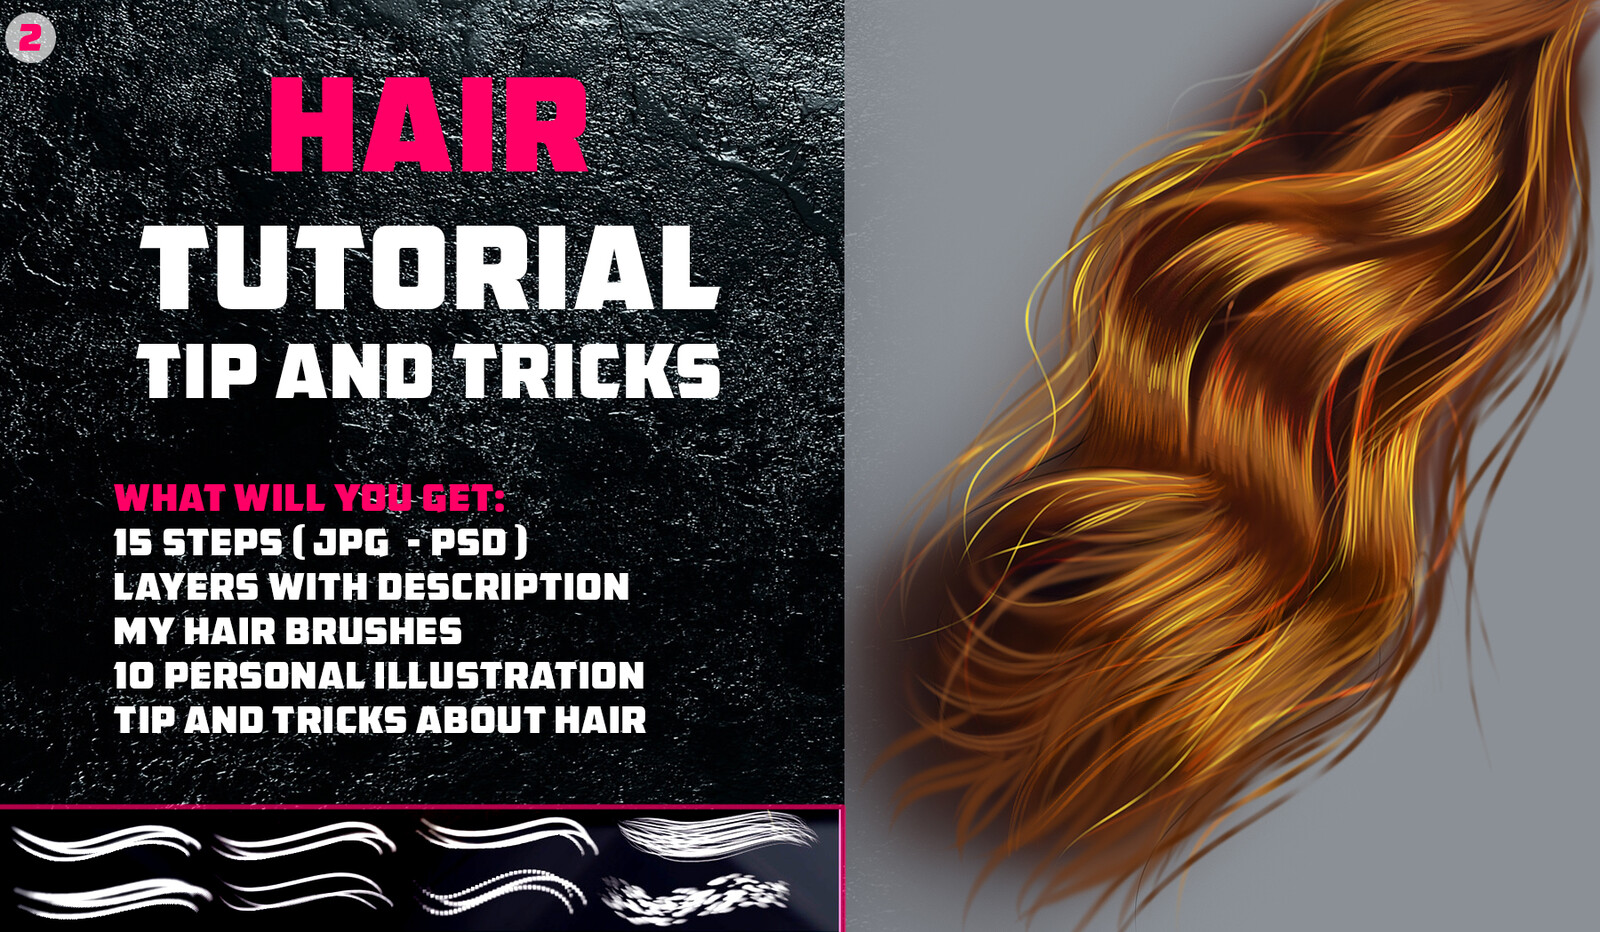 Artstation Marketplace Link:
https://www.artstation.com/vurdem/store/d2jr/hair-tutorial-tip-and-tricks-hair-brushes